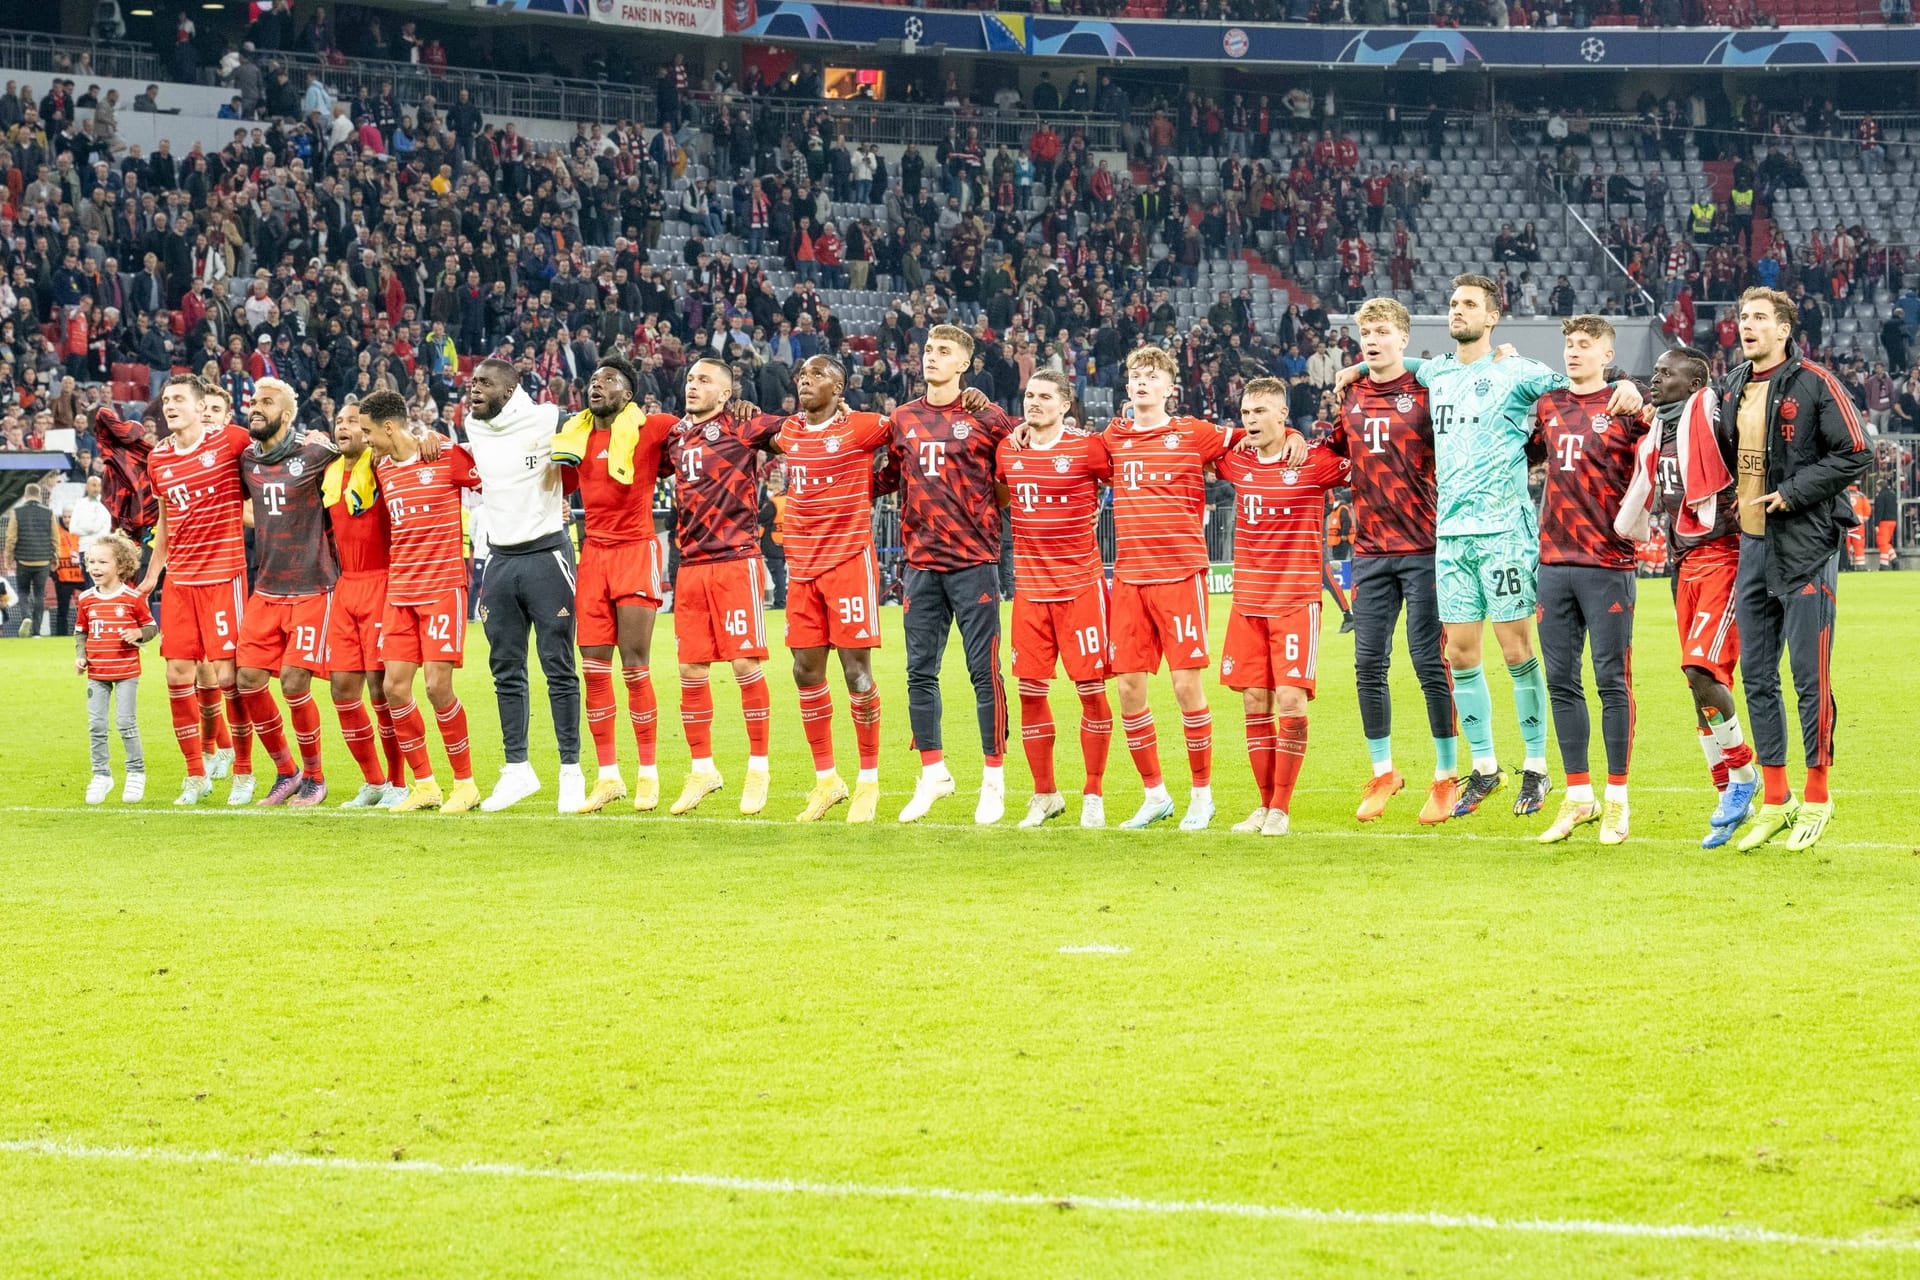 Im letzten Champions-League-Gruppenspiel feiert der FC Bayern gegen Inter Mailand einen souveränen 2:0-Erfolg. In einer stark veränderten Startelf durften auch die jungen wilden Spielminuten sammeln, konnten aber nur bedingt überzeugen. Dafür glänzte erneut ein Altstar. Die Spieler des FC Bayern in der Einzelkritik.